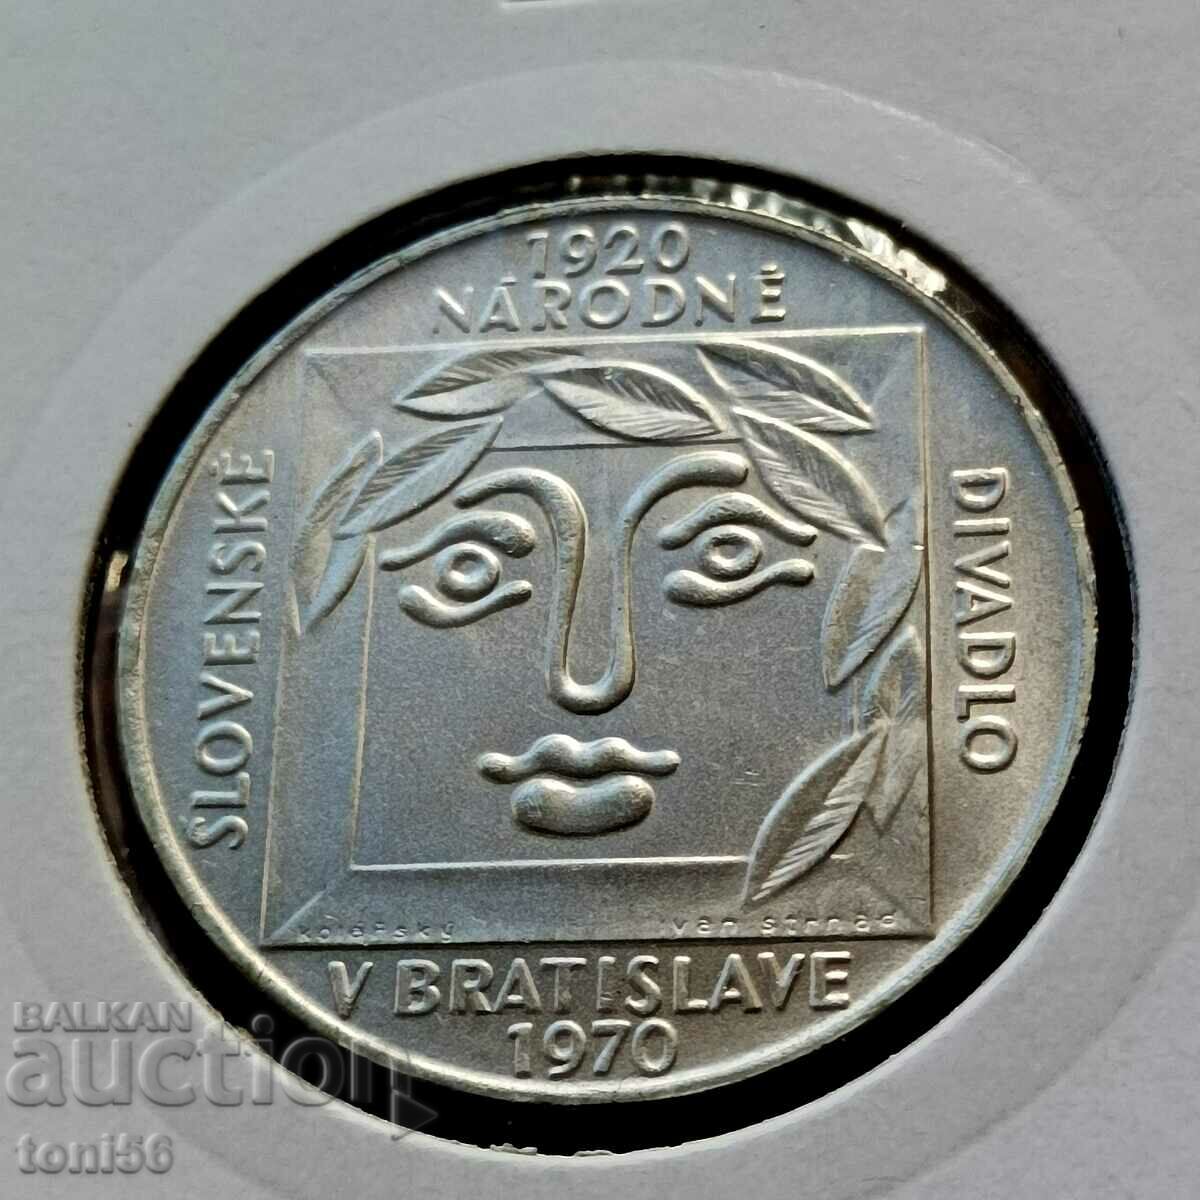 Czechoslovakia 25 kroner 1970 UNC - Silver